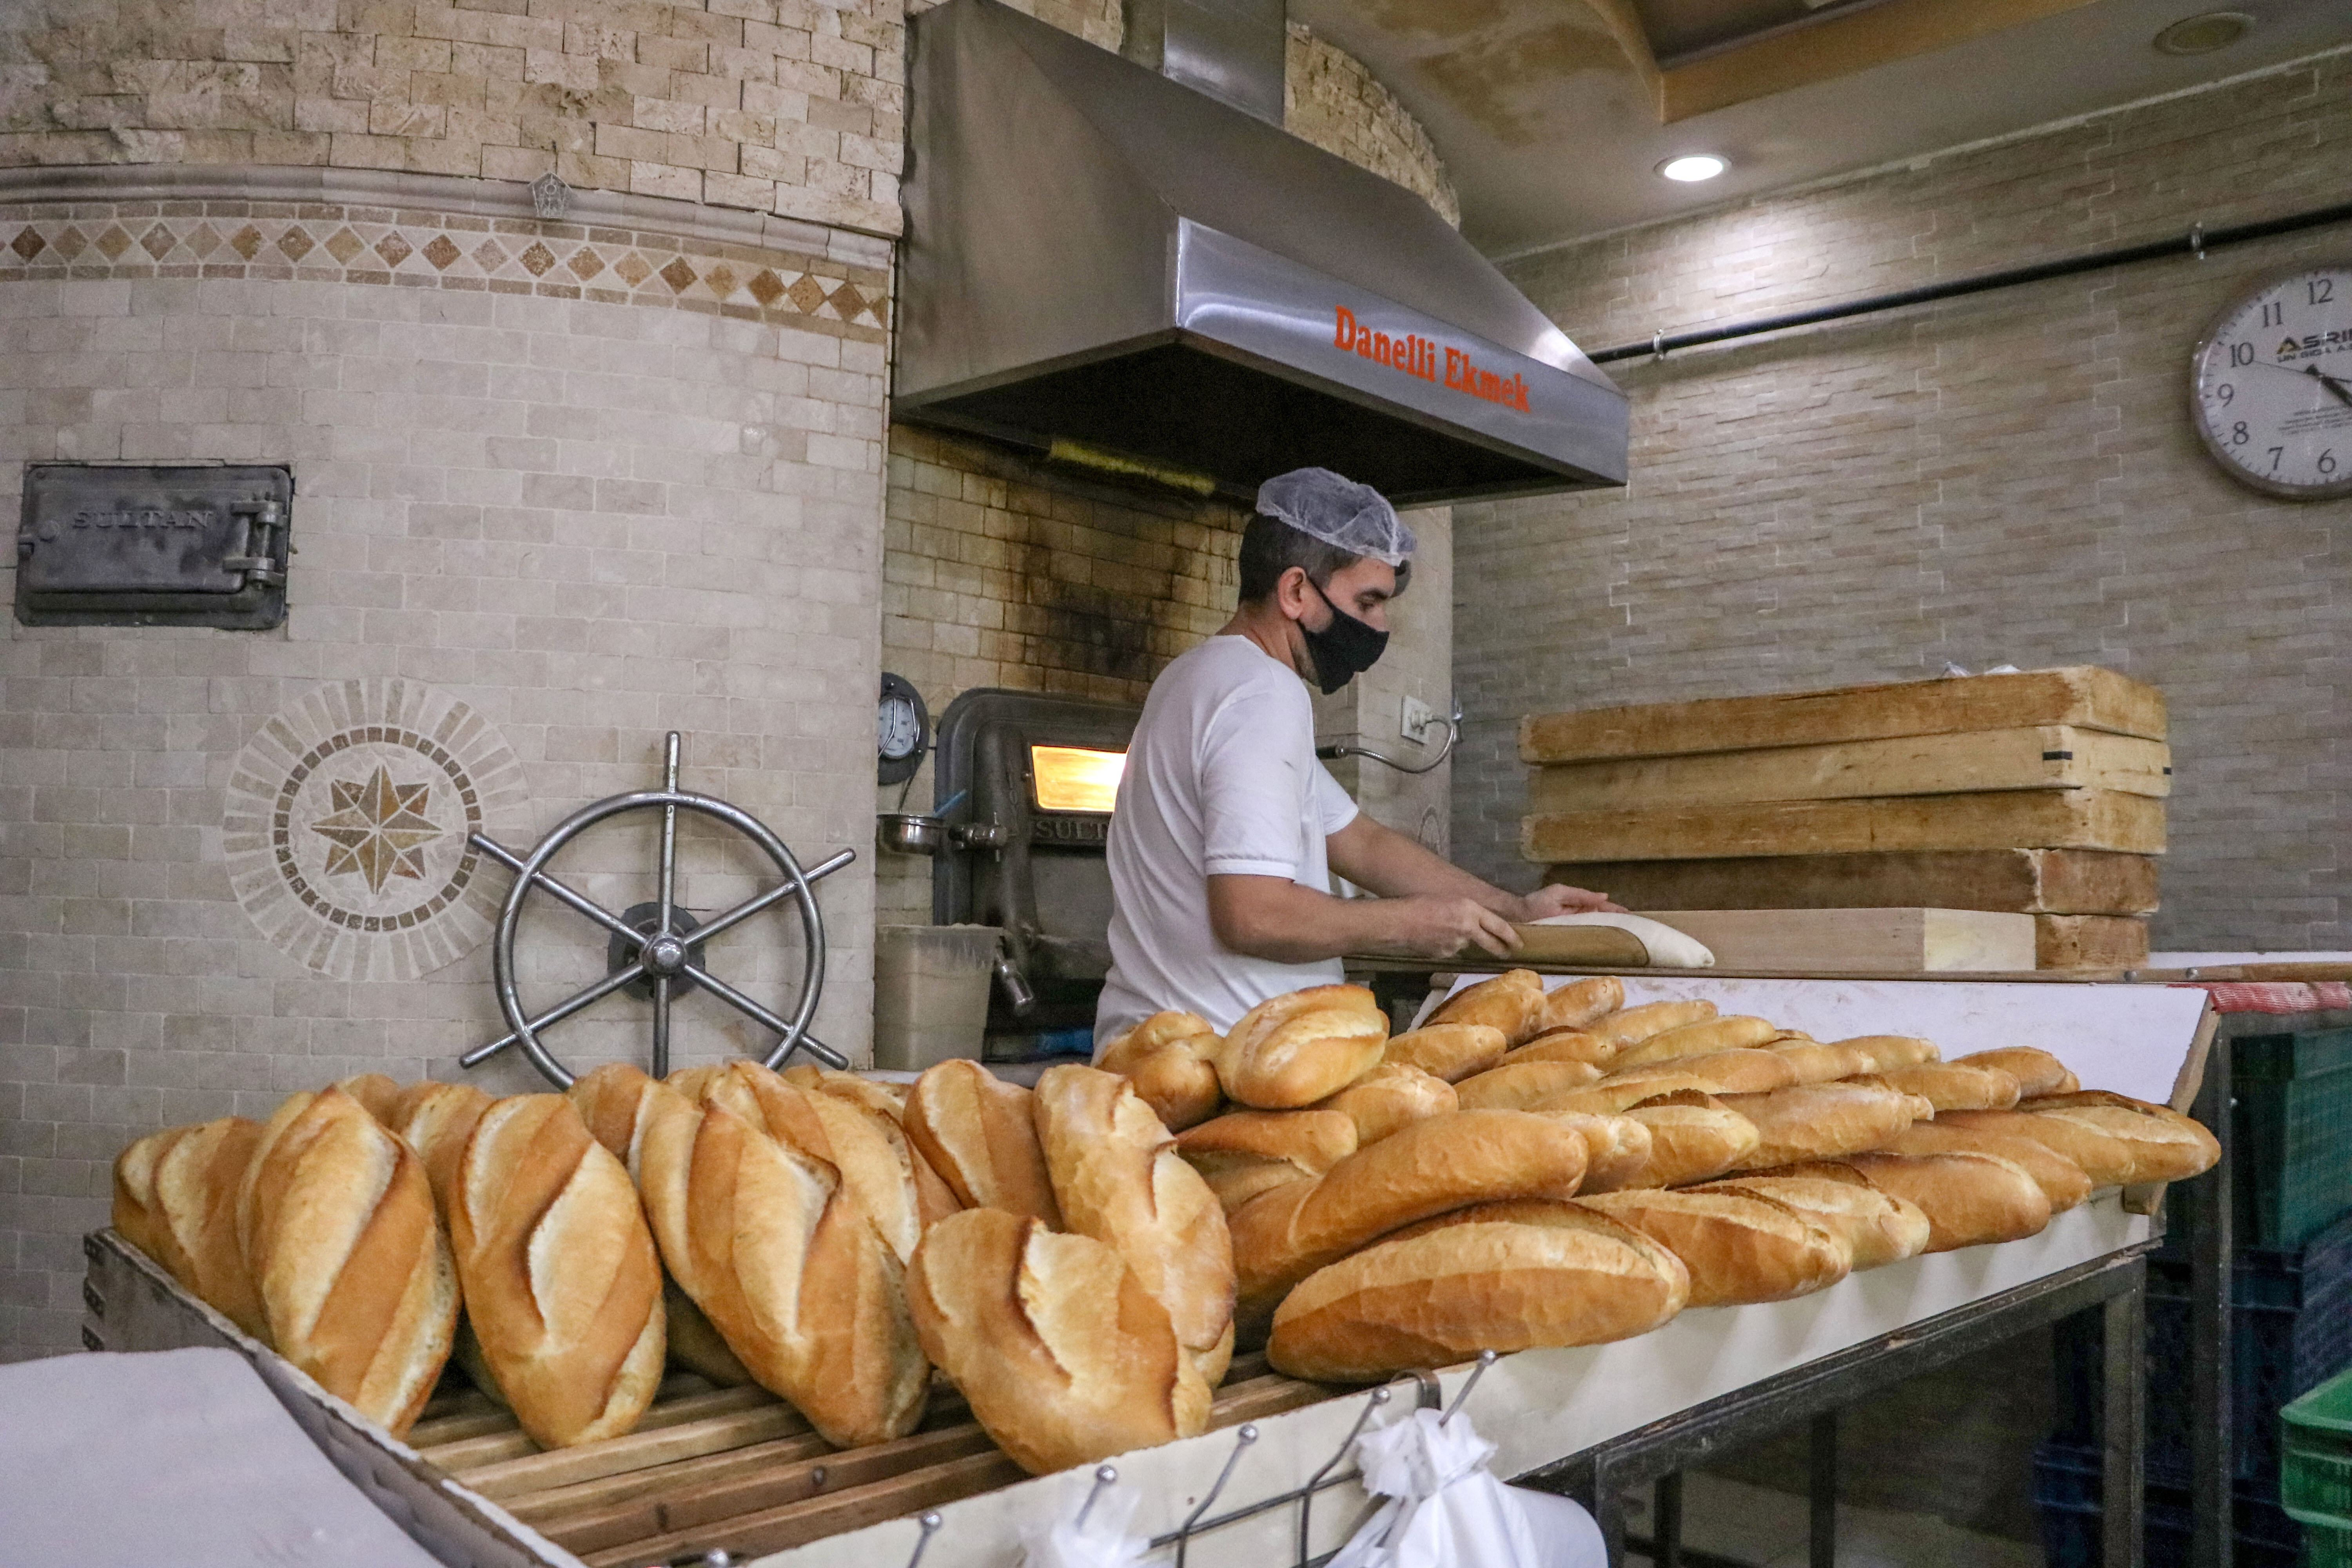 Tarifeye aykırı ekmek satışı yapan işletmelere 9,4 milyon lira ceza kesildi